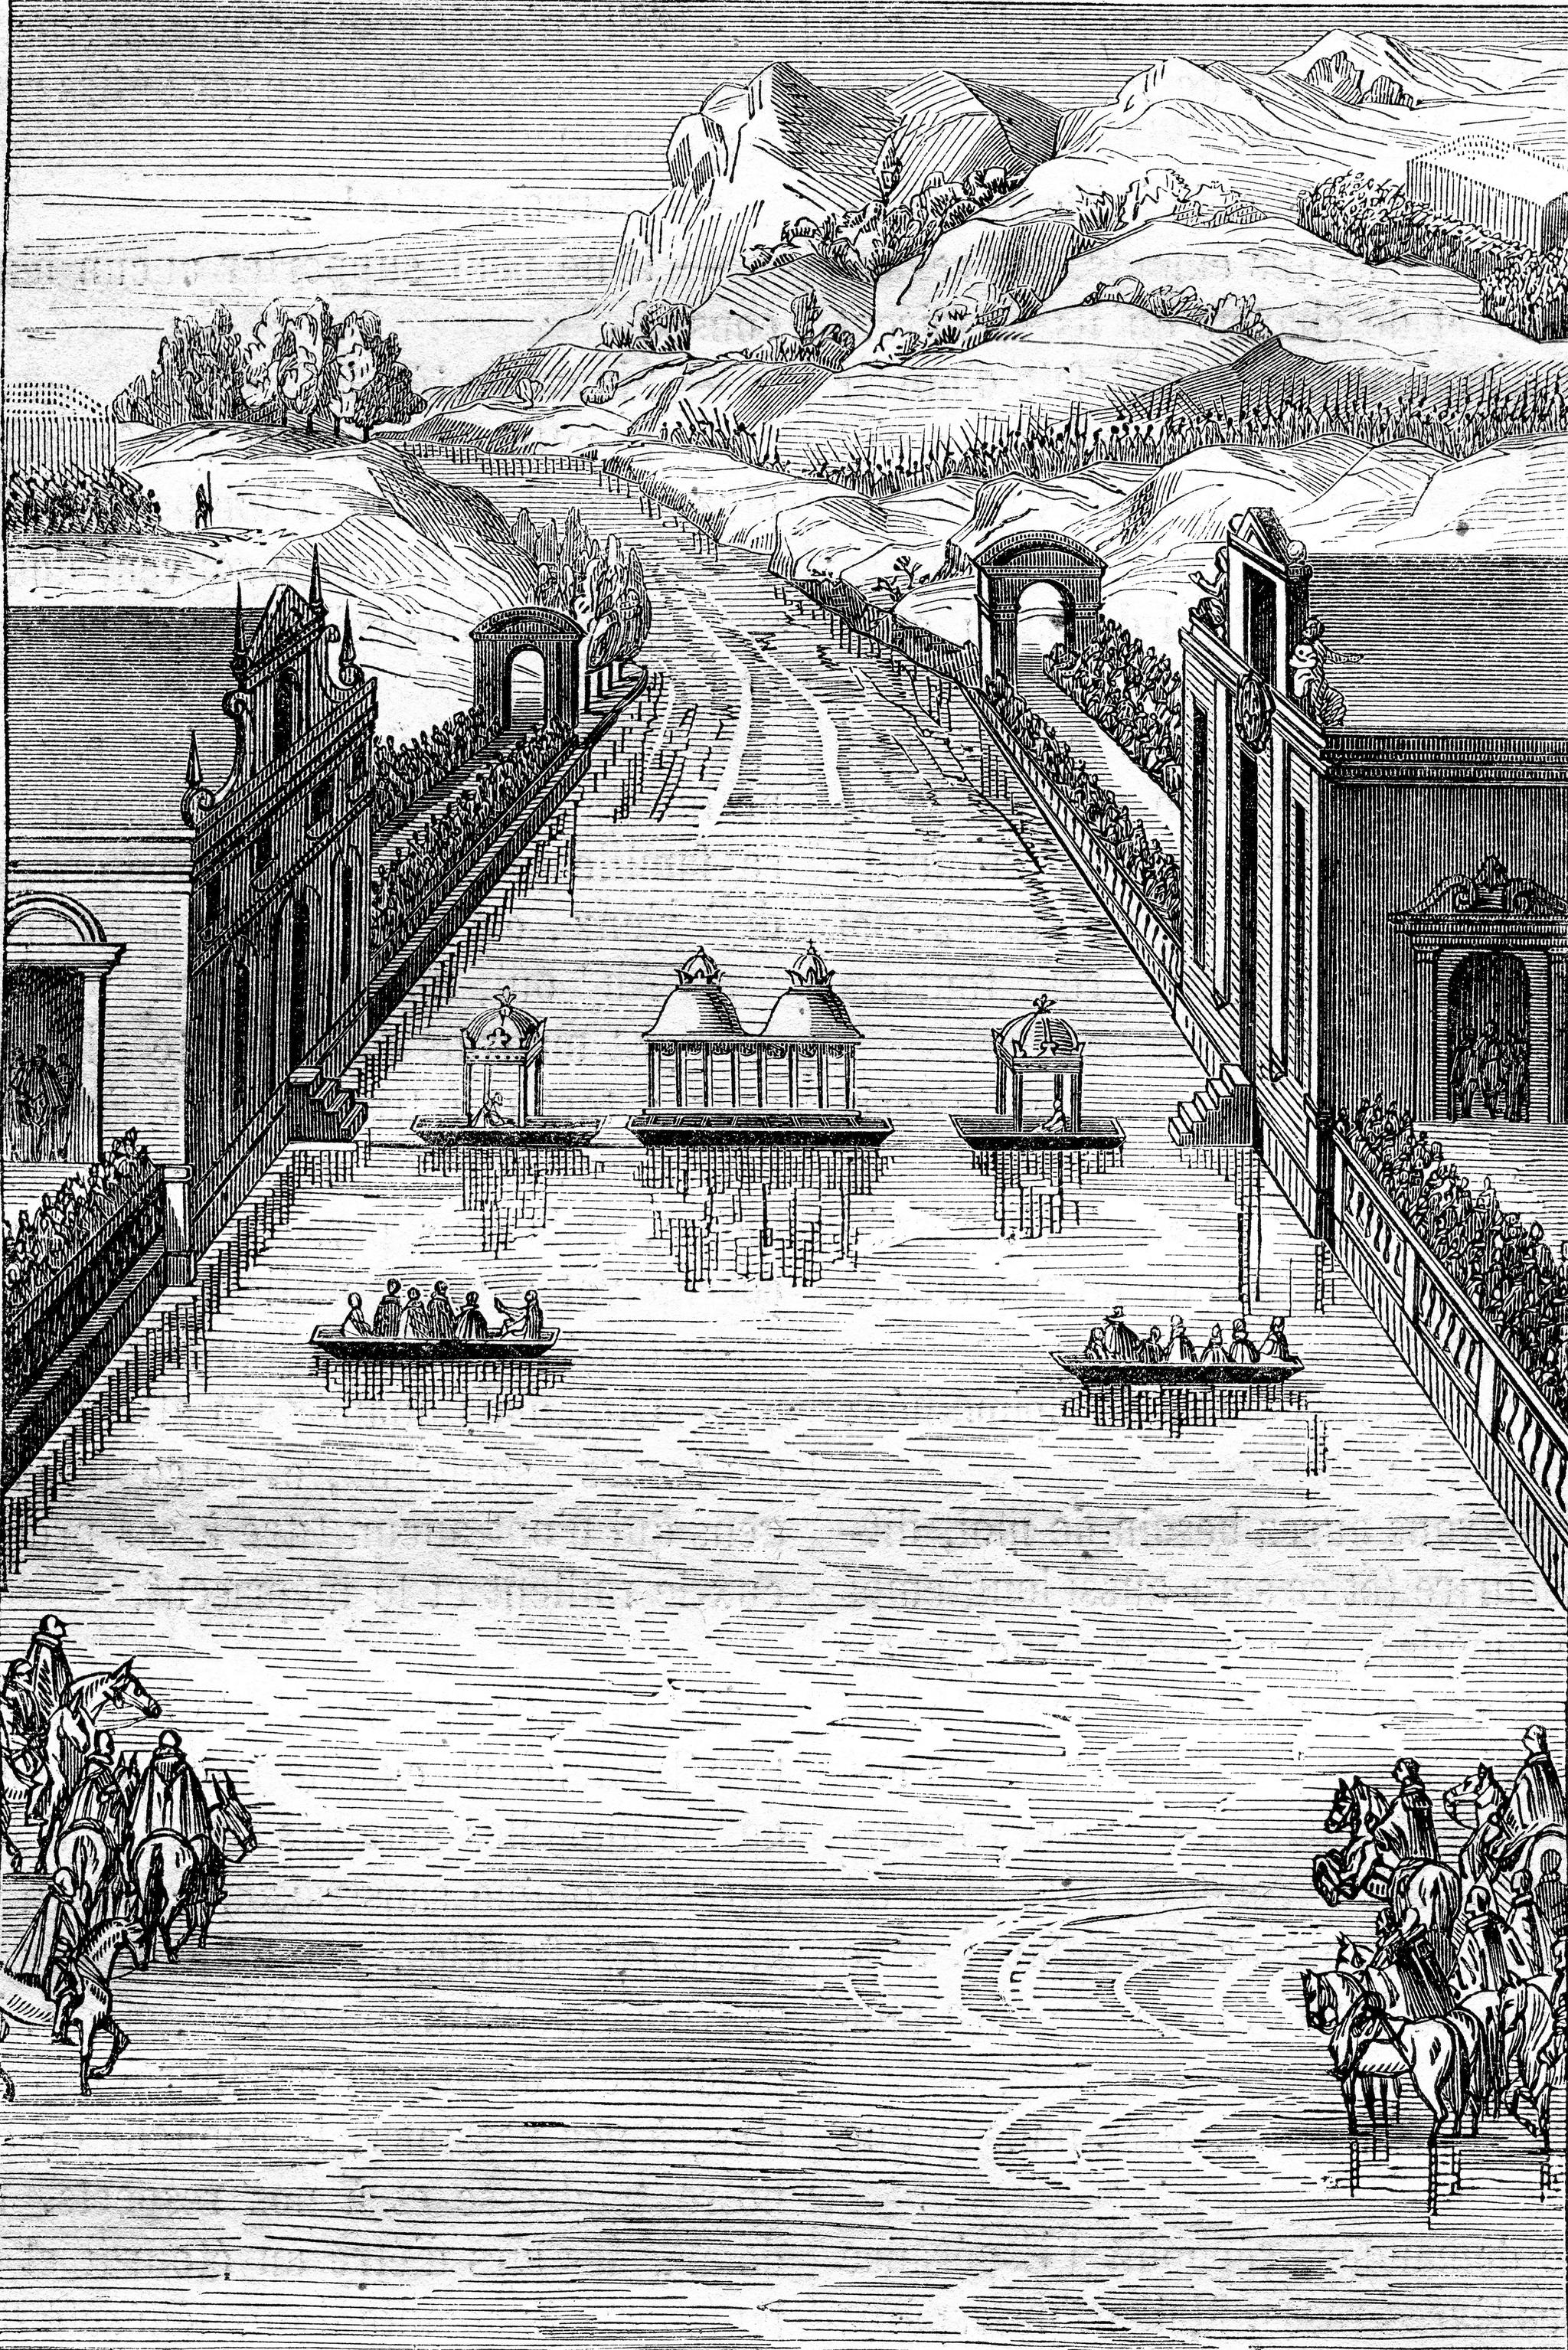 Spania og Frankrike deler på suvereniteten over den ubebodde Fasanøya i elven Bibosa. Avtalen ble til etter 30-årskrigen var over i 1659. Illustrasjonen viser elven Bibosa på 1600-tallet. 